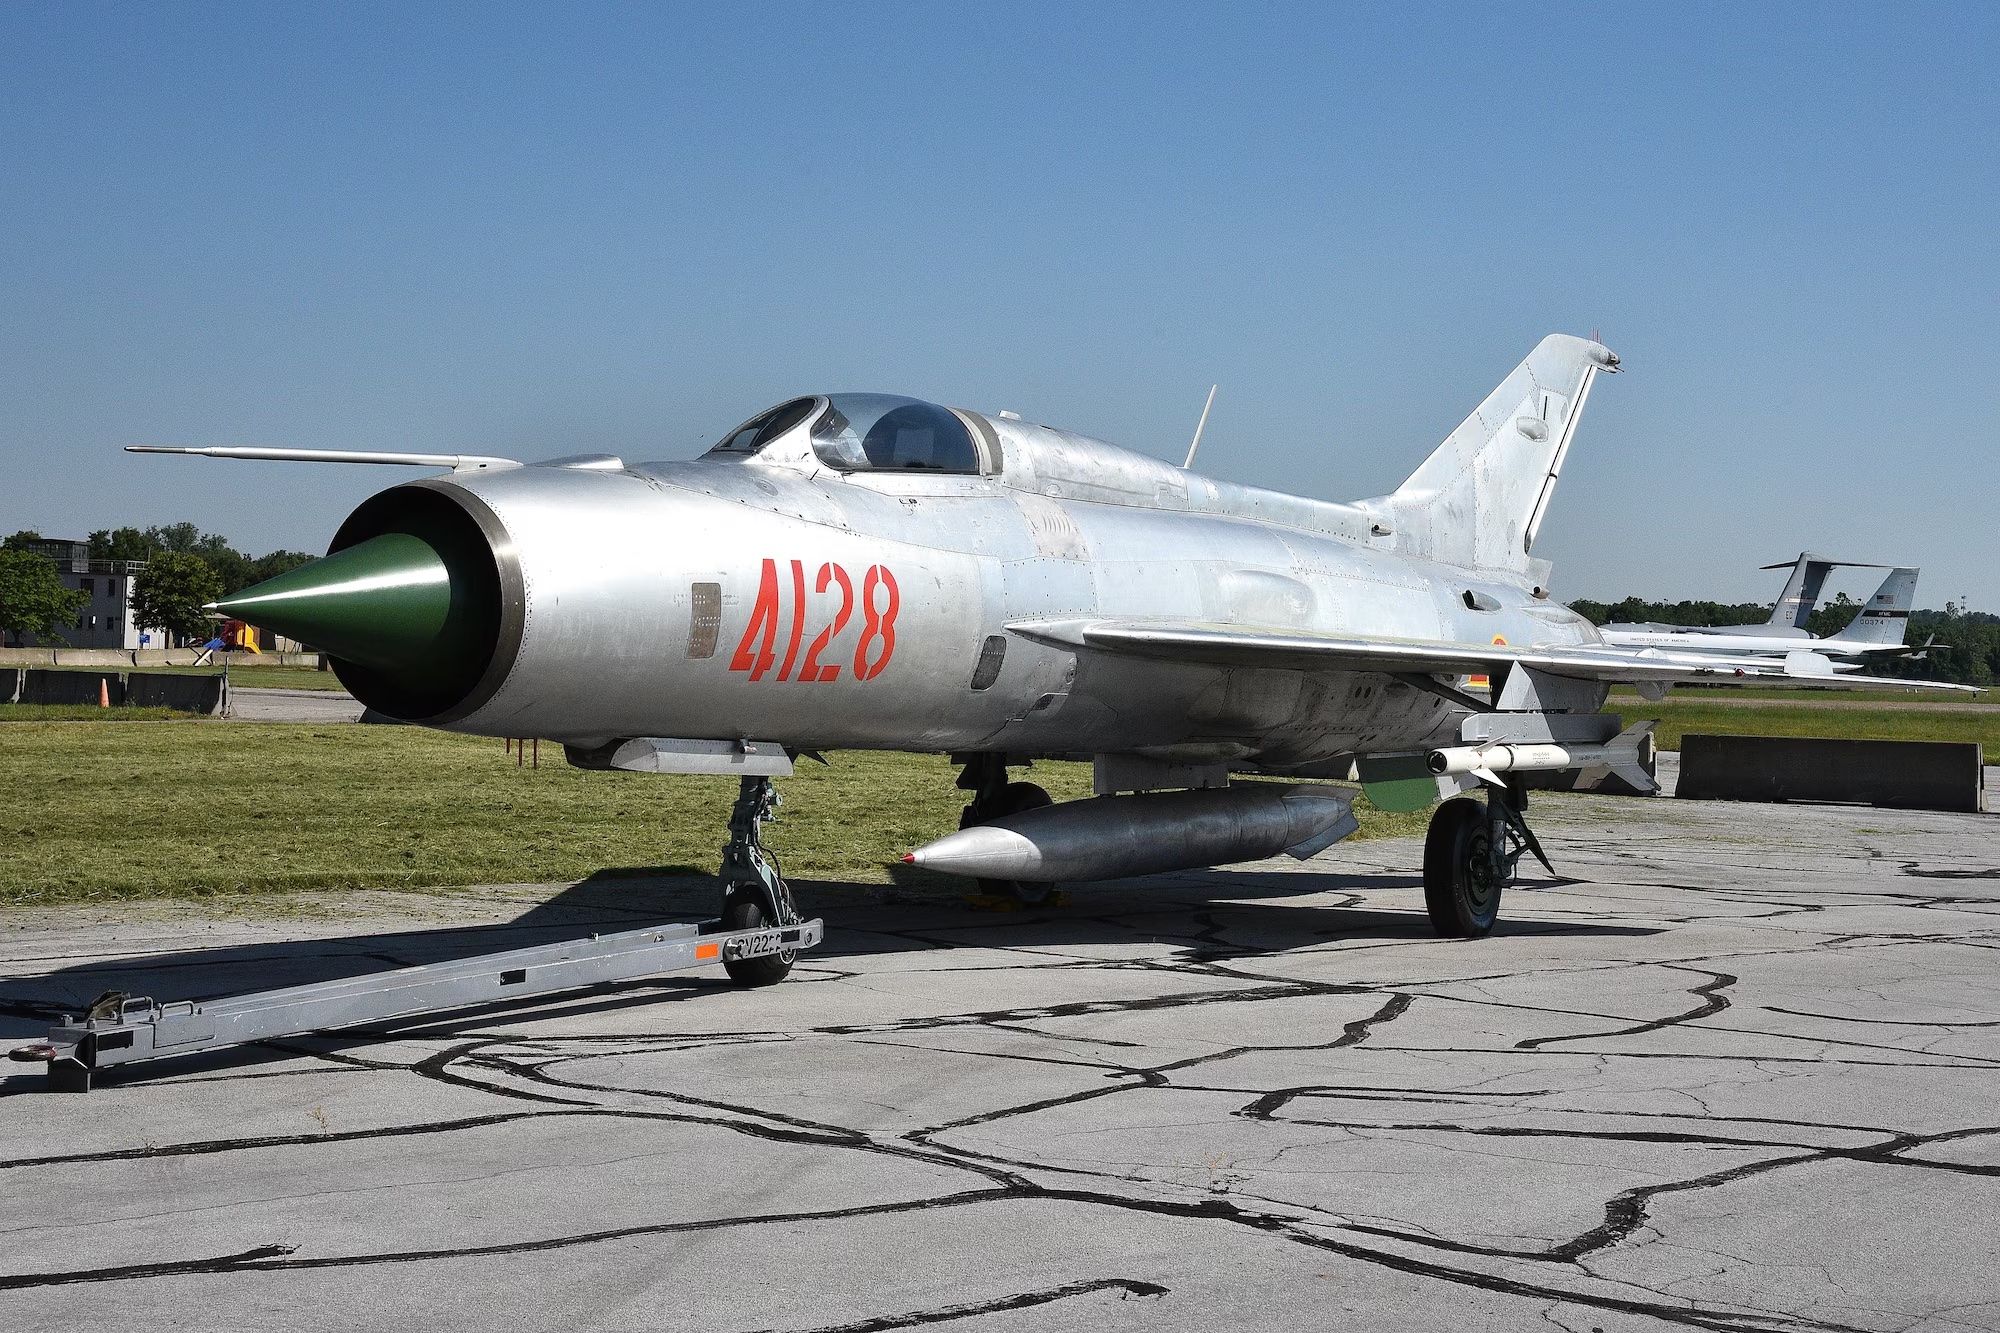 A MiG-21 on display.